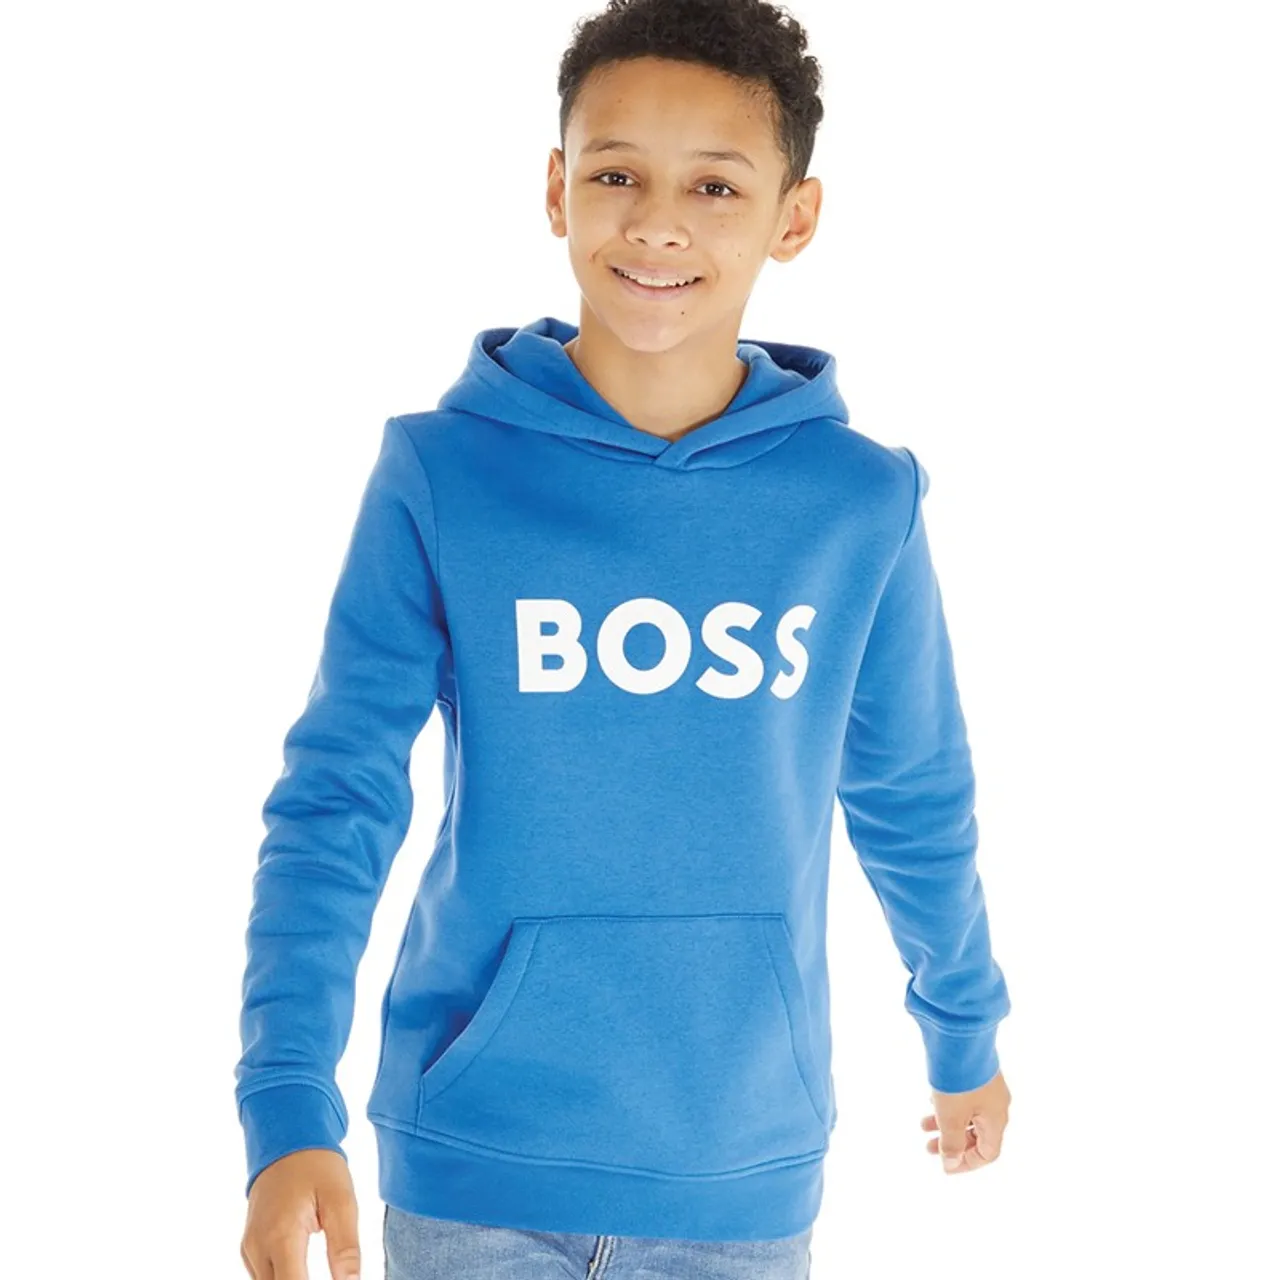 BOSS Boys Hooded Sweatshirt Blue